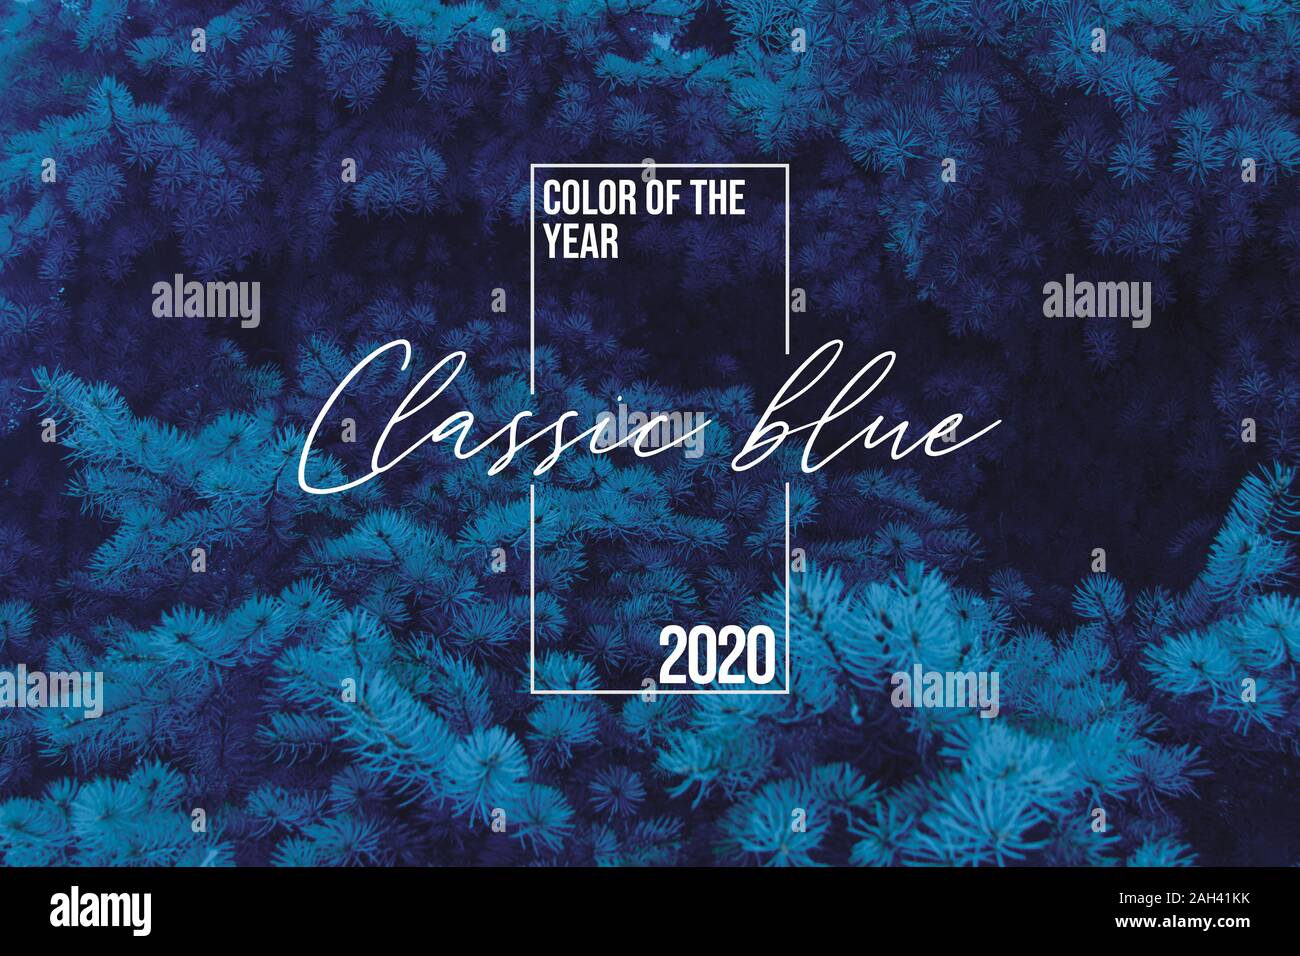 Arrière-plan classique d'épinette bleue avec couleur de l'année 2020, pallette bleue avec nuance bleue classique et sapin d'hiver, pin comme arrière-plan Banque D'Images